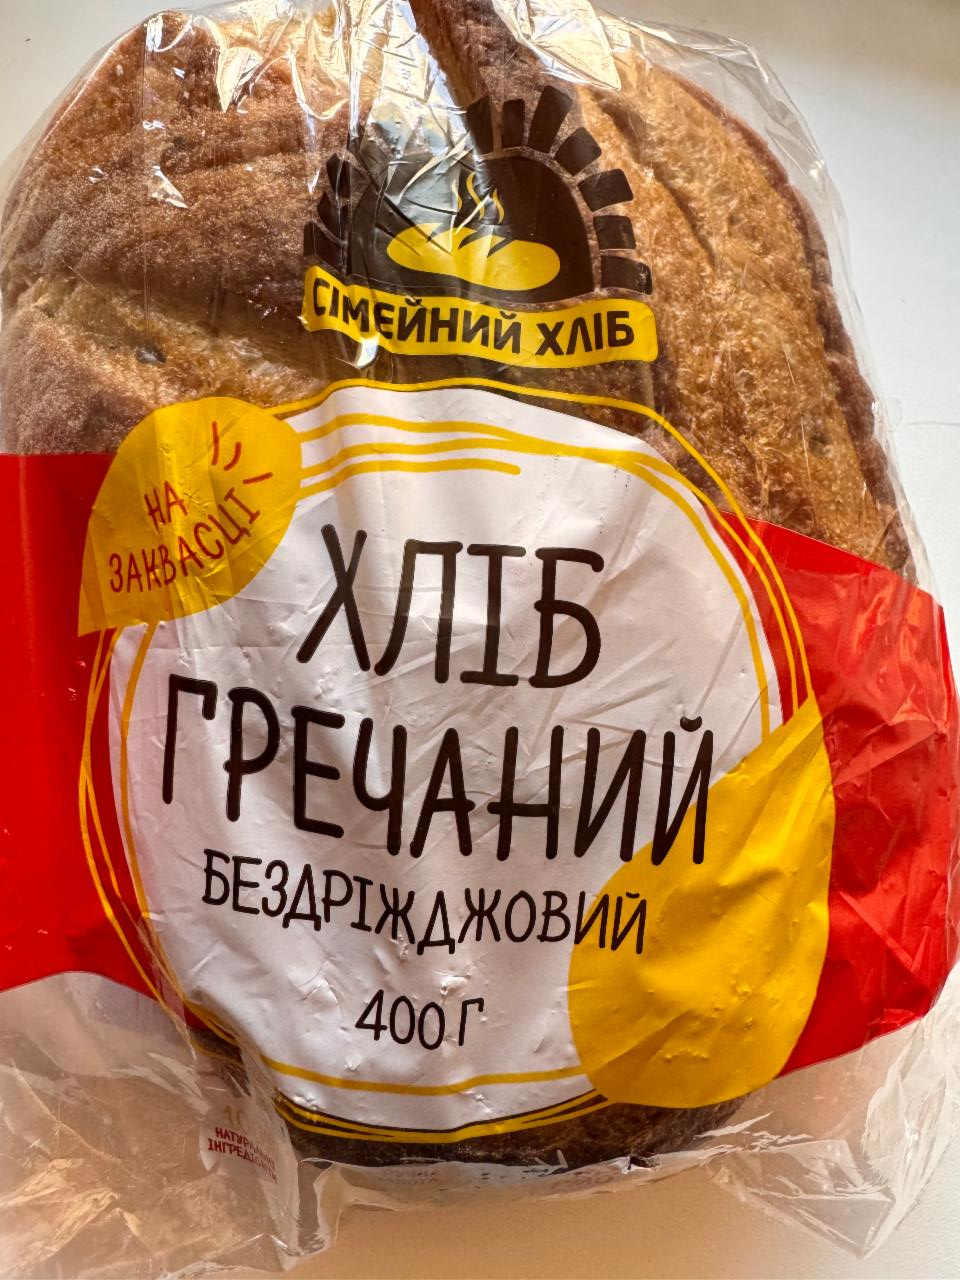 Фото - Хлеб Гречневый Бездрожжевой на закваске Сімейний хліб